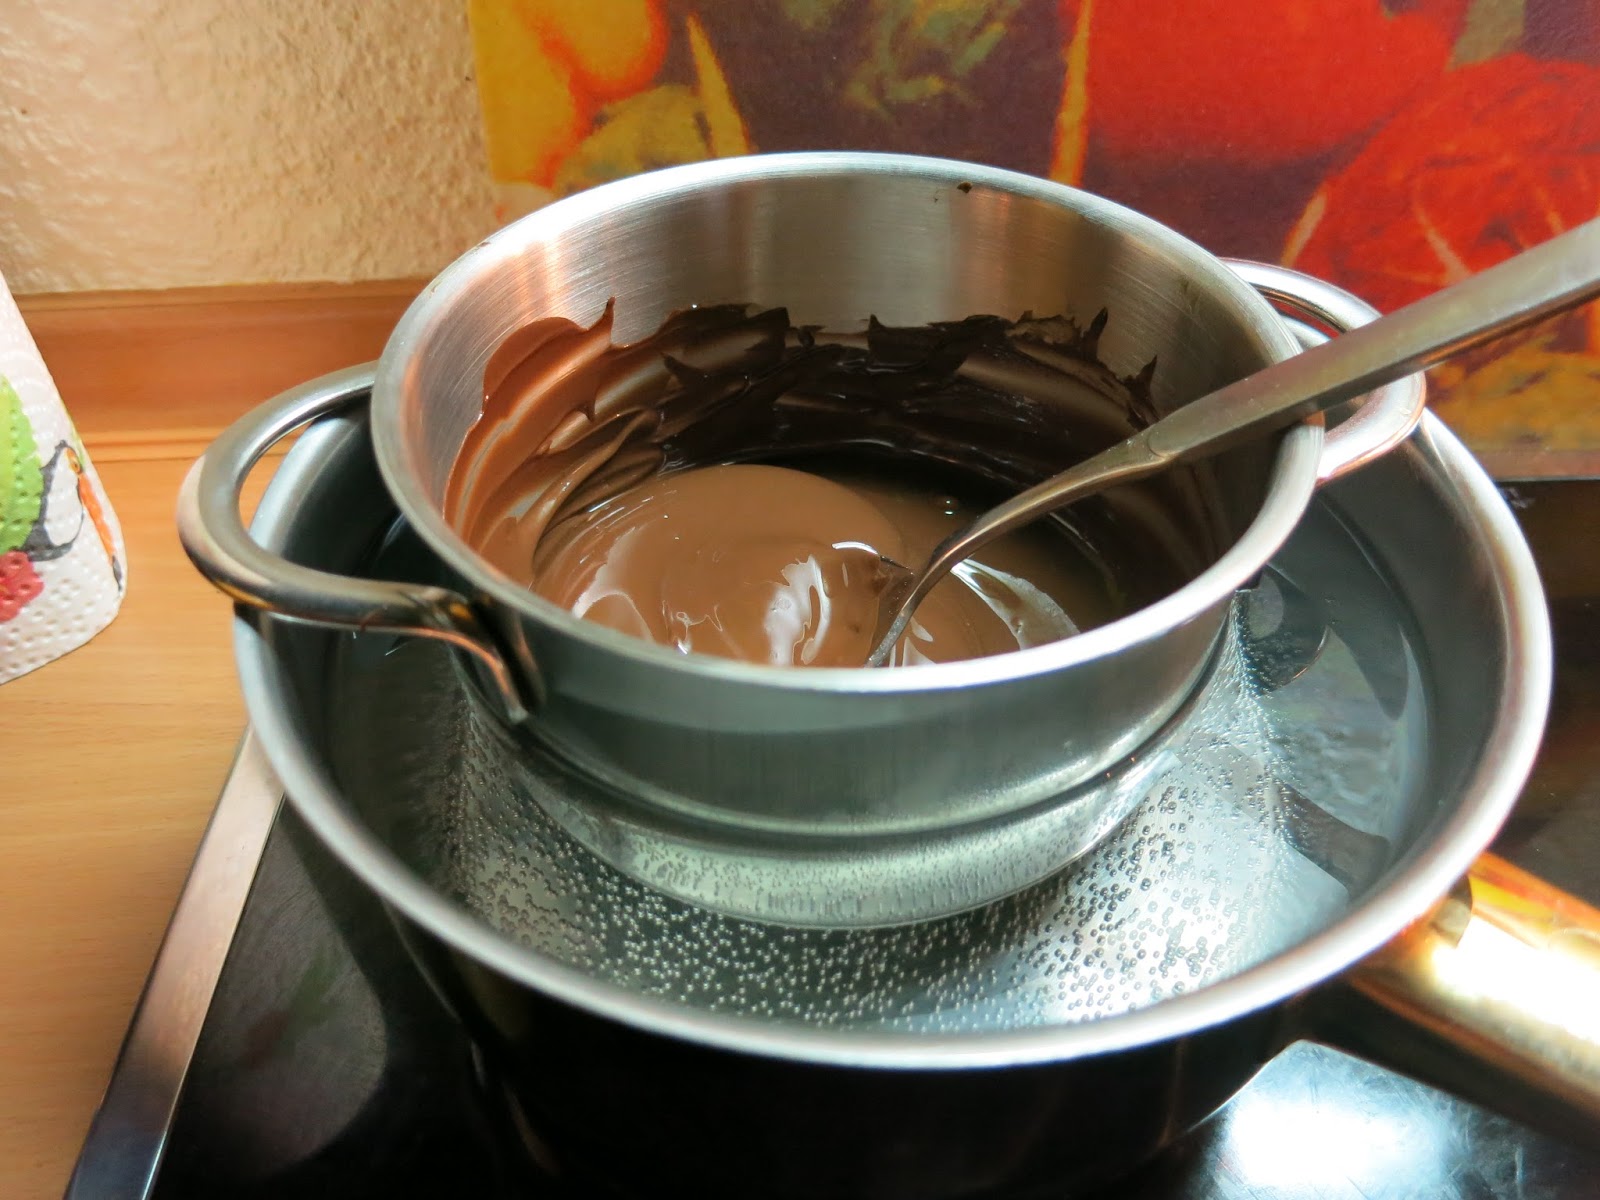 Selbstgemachte Schokolade mit Walnusskaramell und Salz